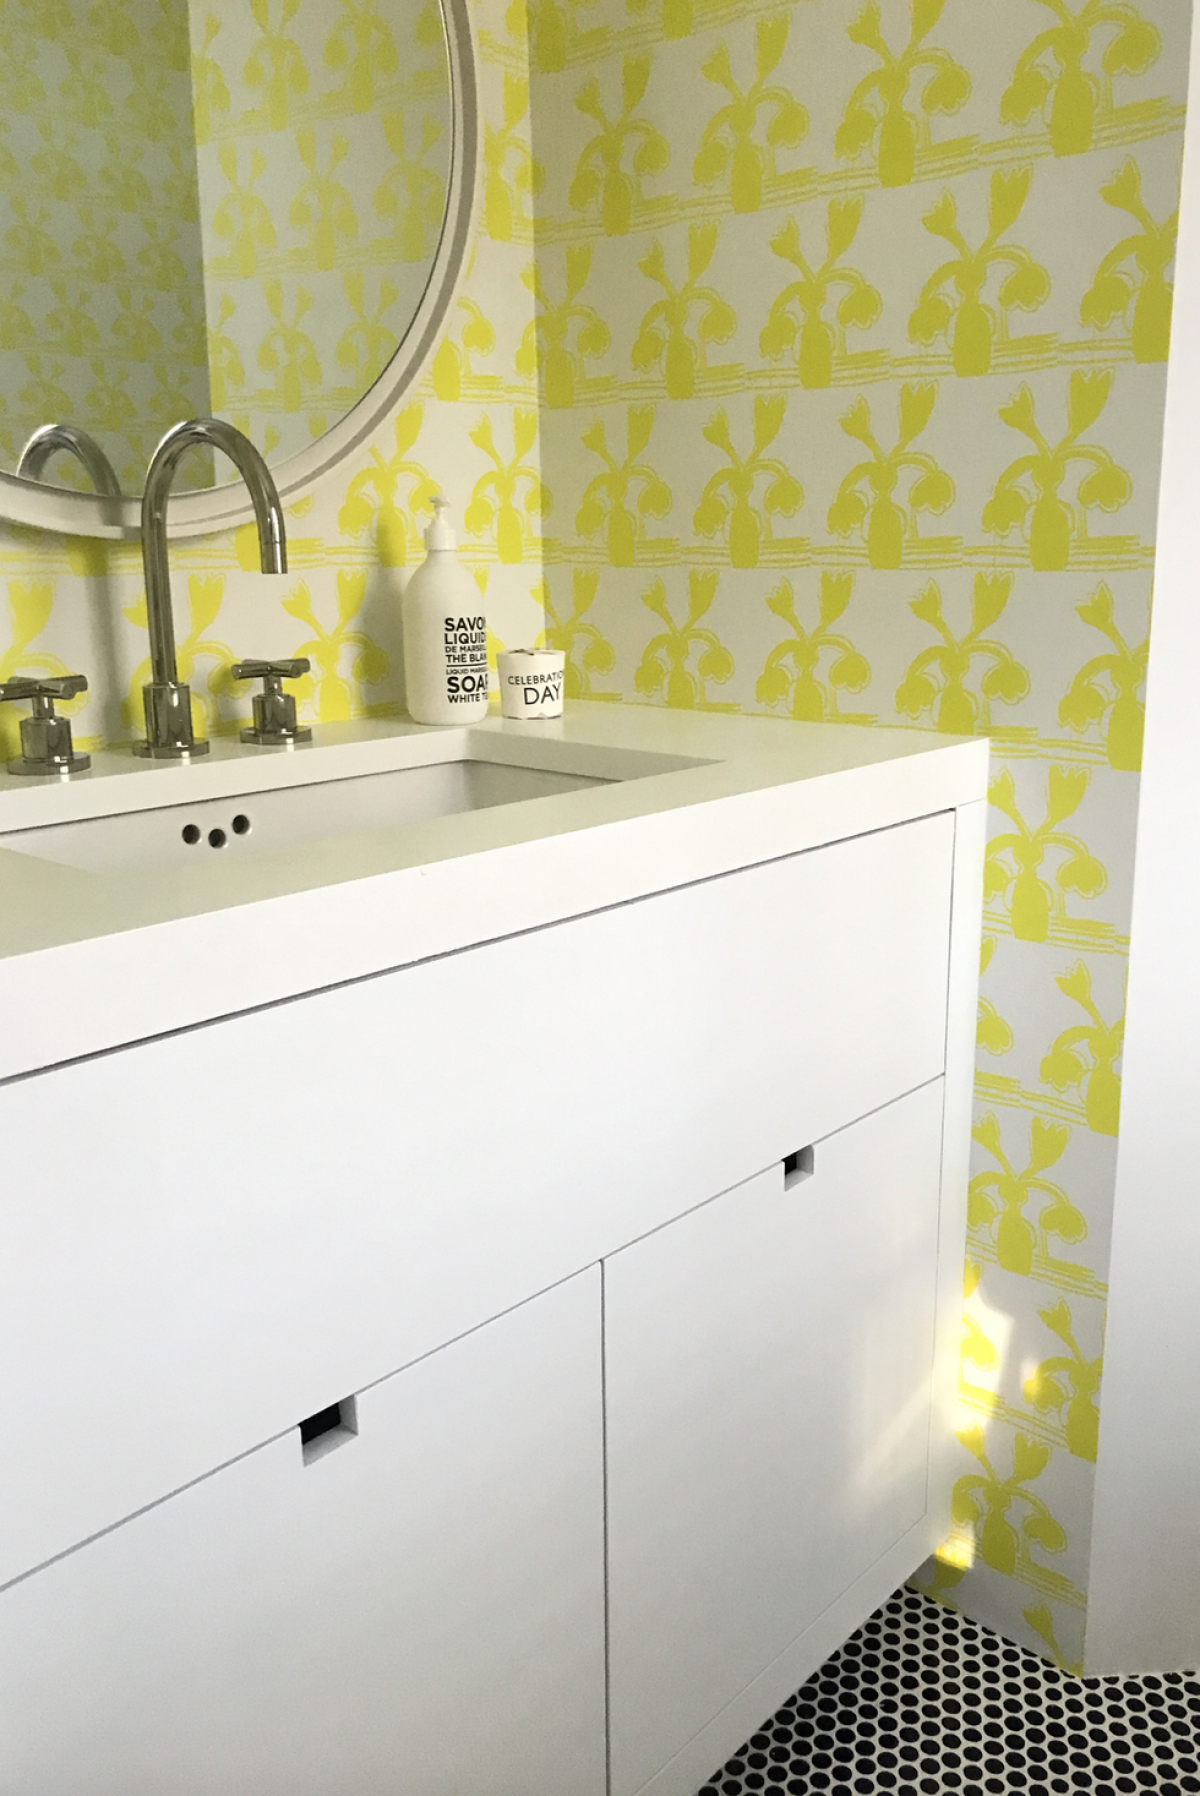  Thiết kế táo bạo cho phòng tắm dành cho trẻ em với cách kết hợp giấy dán tường màu vàng neon. Sử dụng giấy dán tường sẽ dễ lau dọn hơn so với sơn.